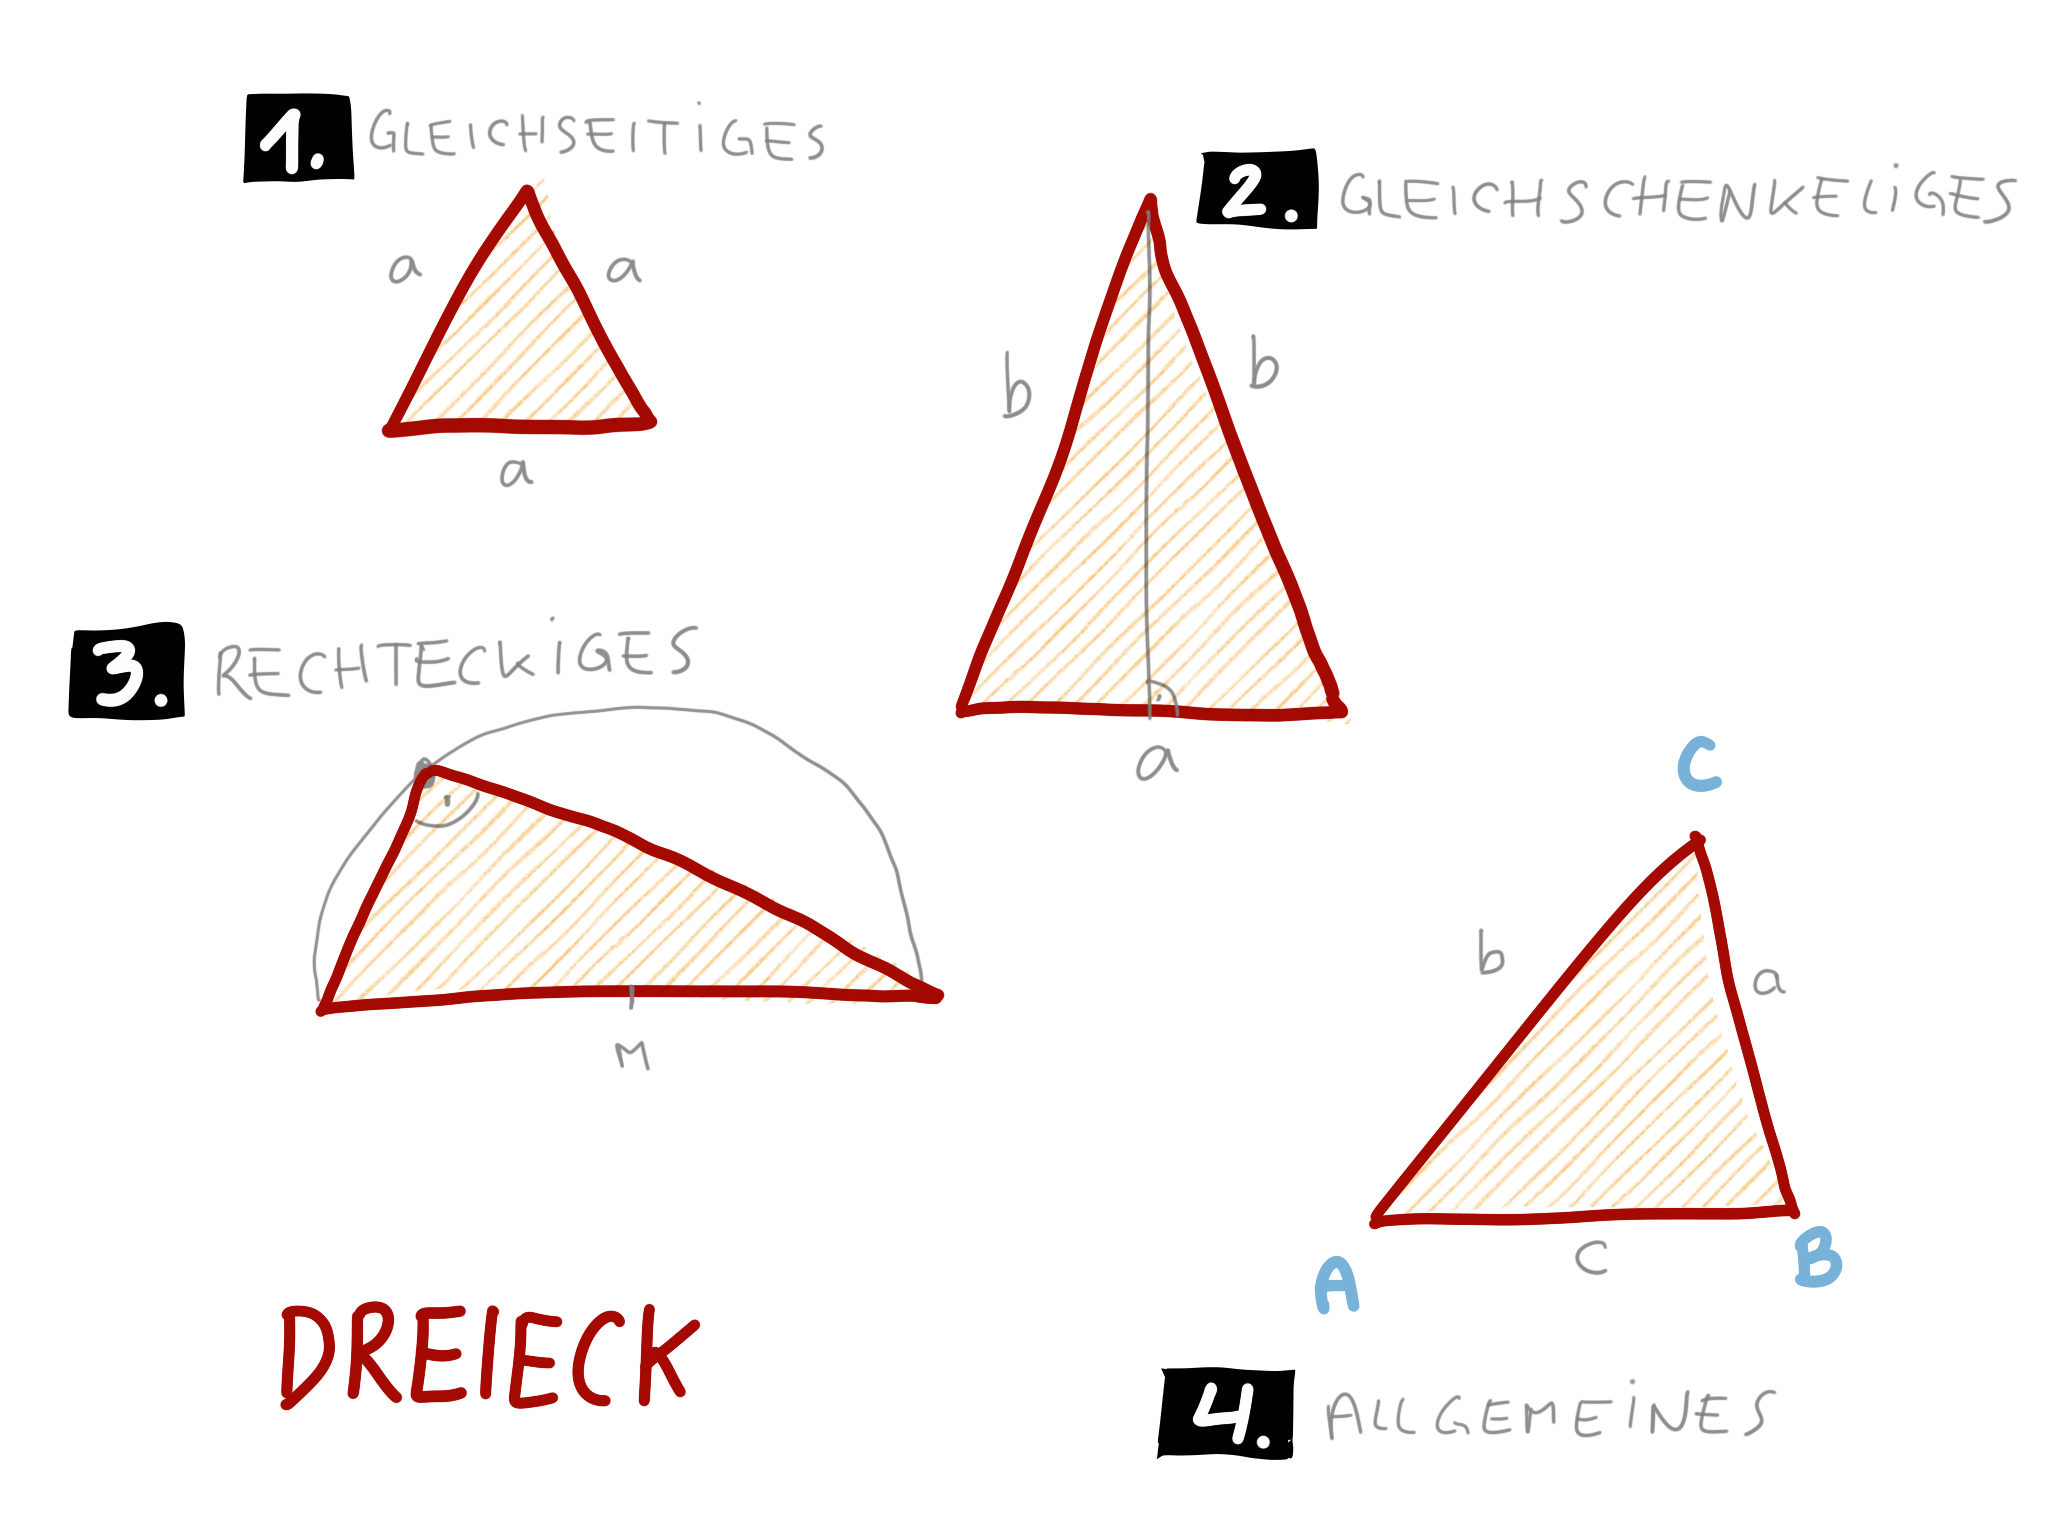 17. Dreiecke und Vierecke, Physikalische Soiree